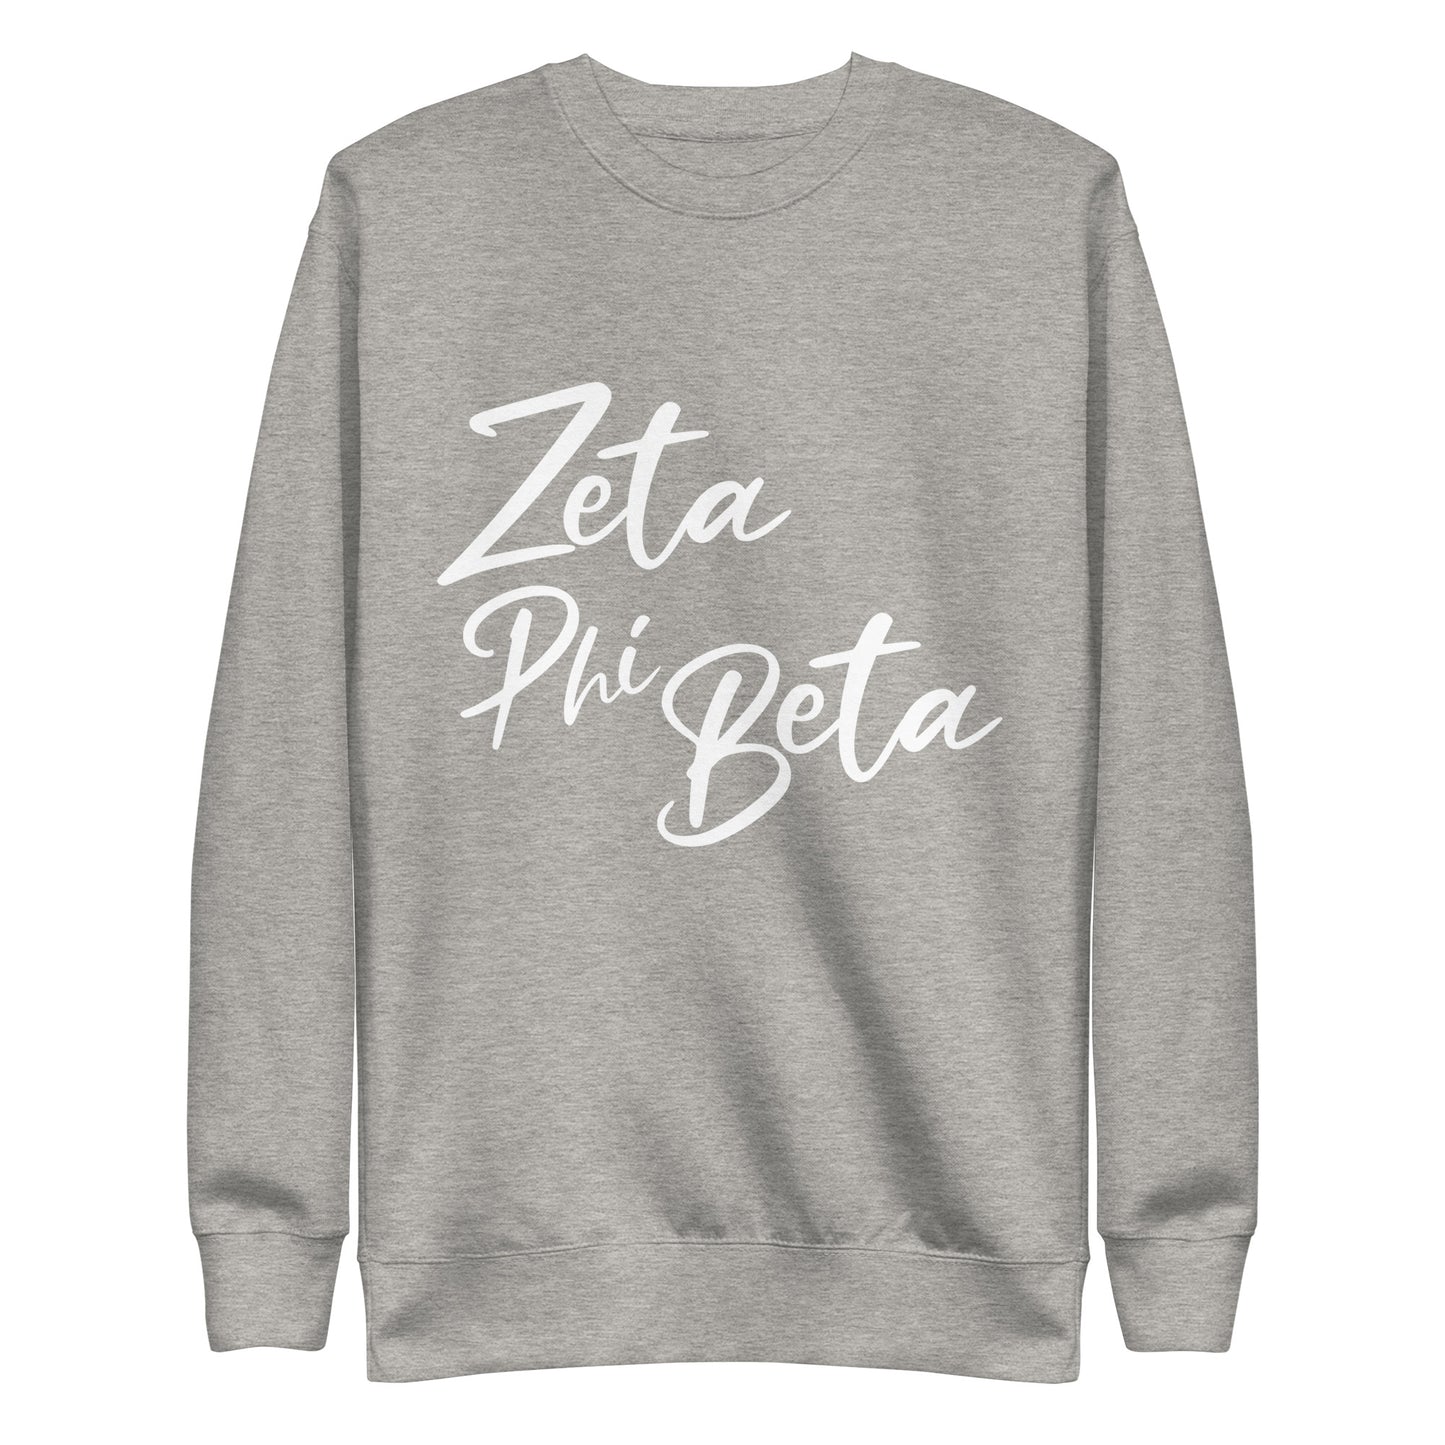 Zeta White Script Sweatshirt